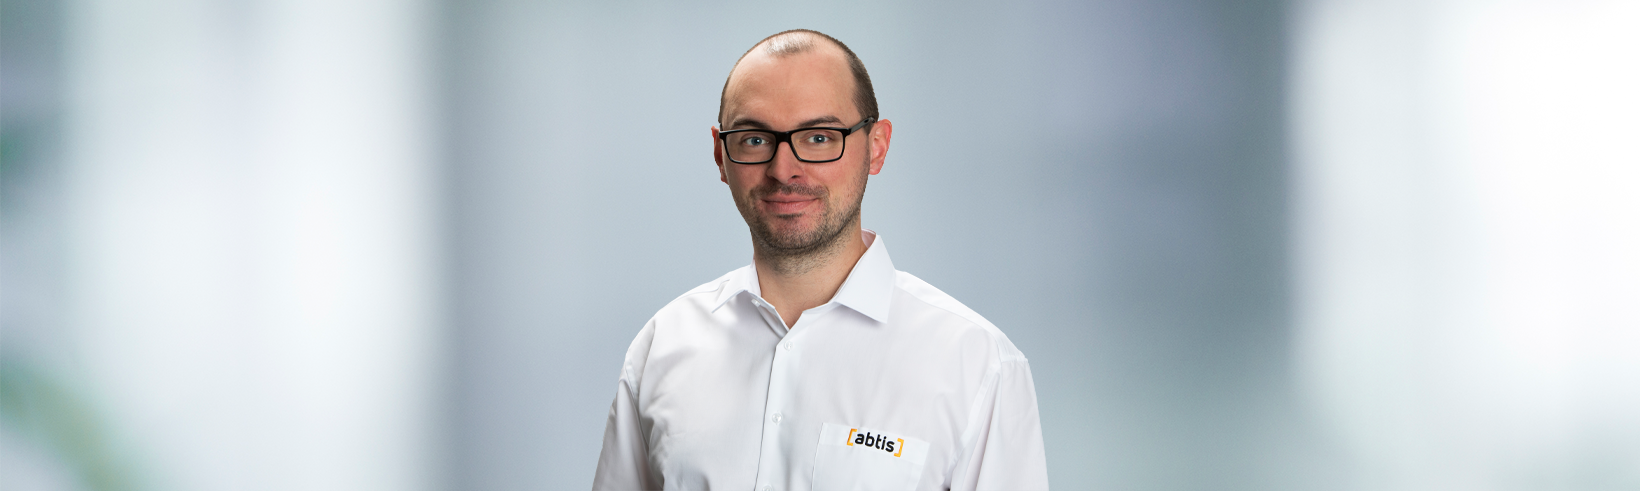 Expert:innen-Interview mit Senior Technology Consultant Erik Kleefeldt - abtis GmbH